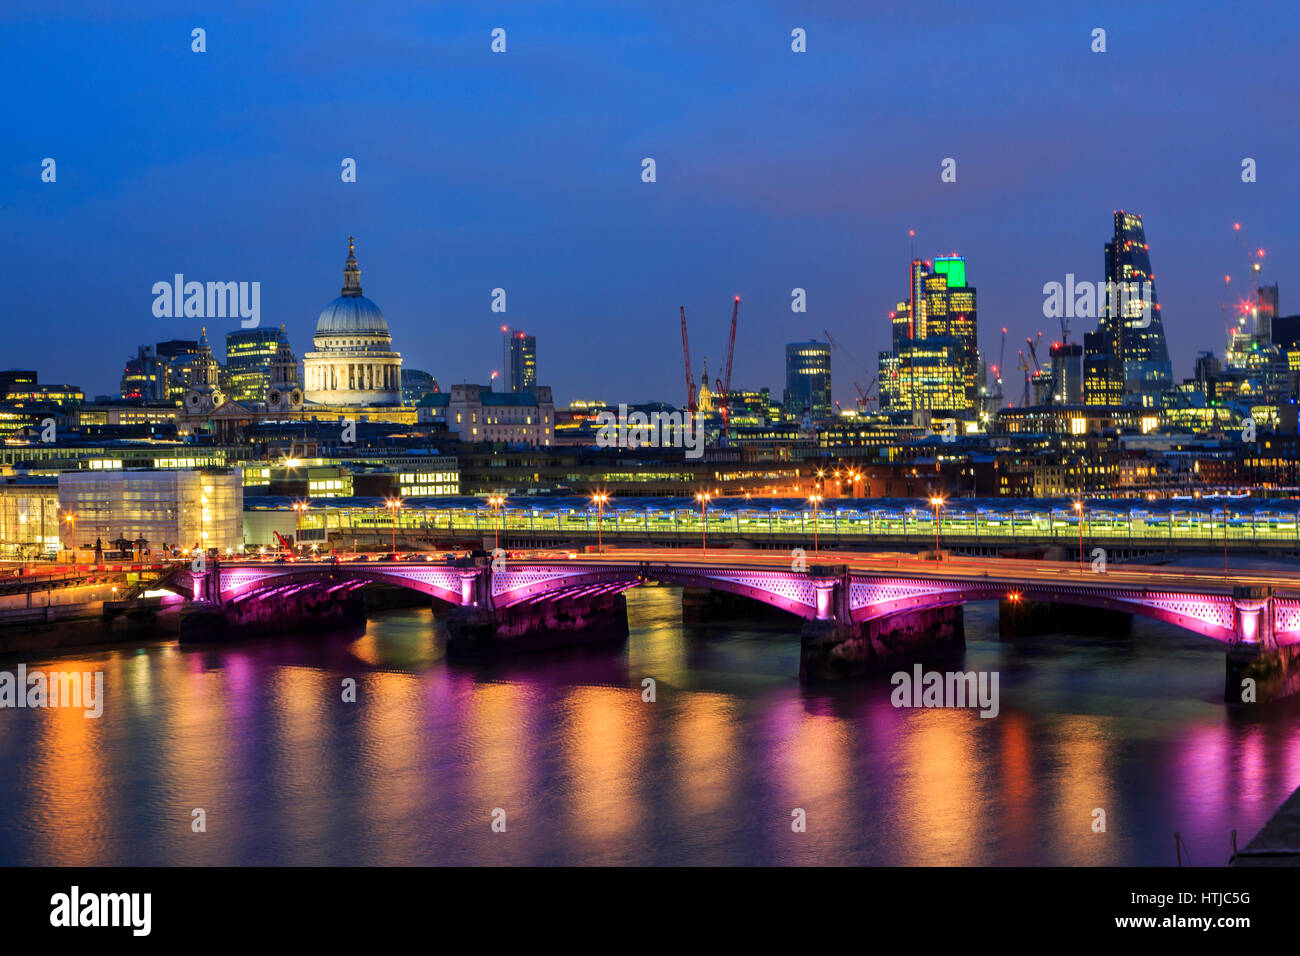 Toits de Londres avec St Paul's Cathedra, Tamise réflexions et ville de Londres crépuscule nuit panorama, Londres, Angleterre, Royaume-Uni Banque D'Images